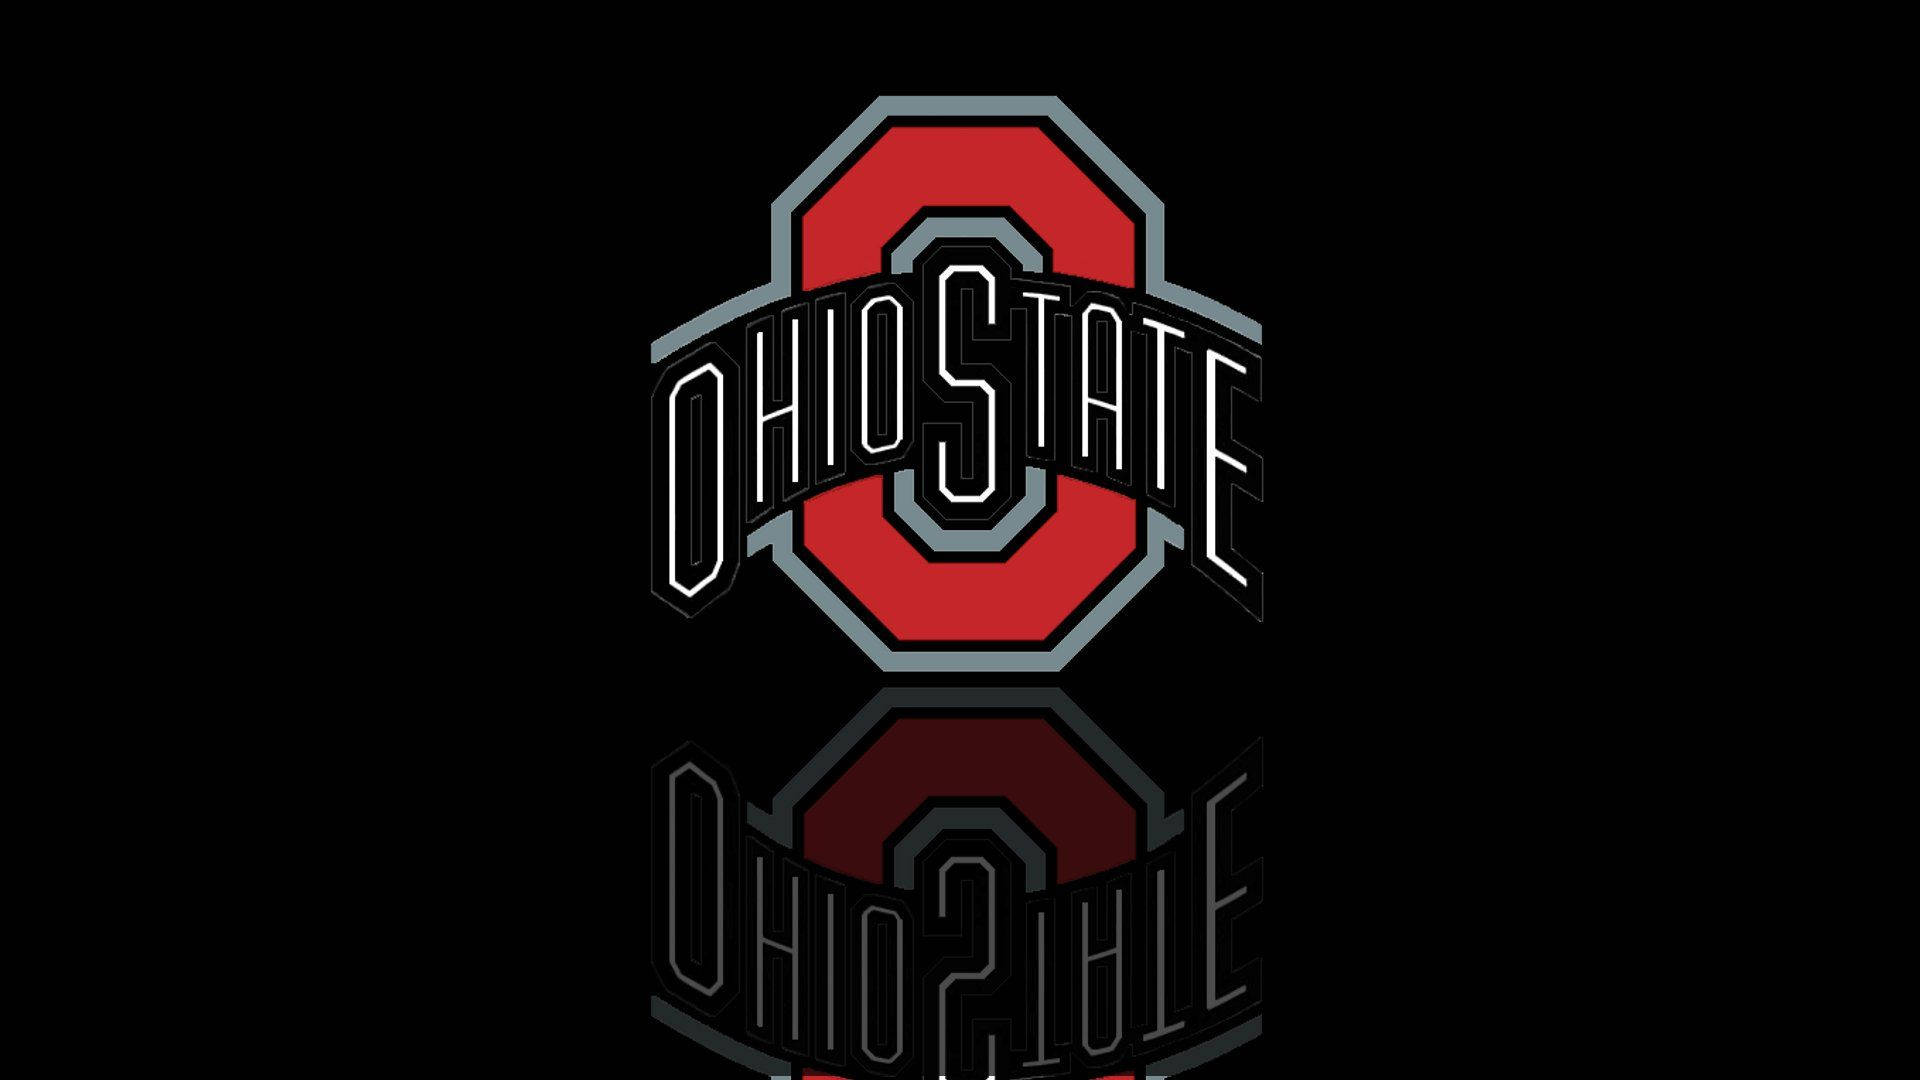 Ohio State University Reflection Background